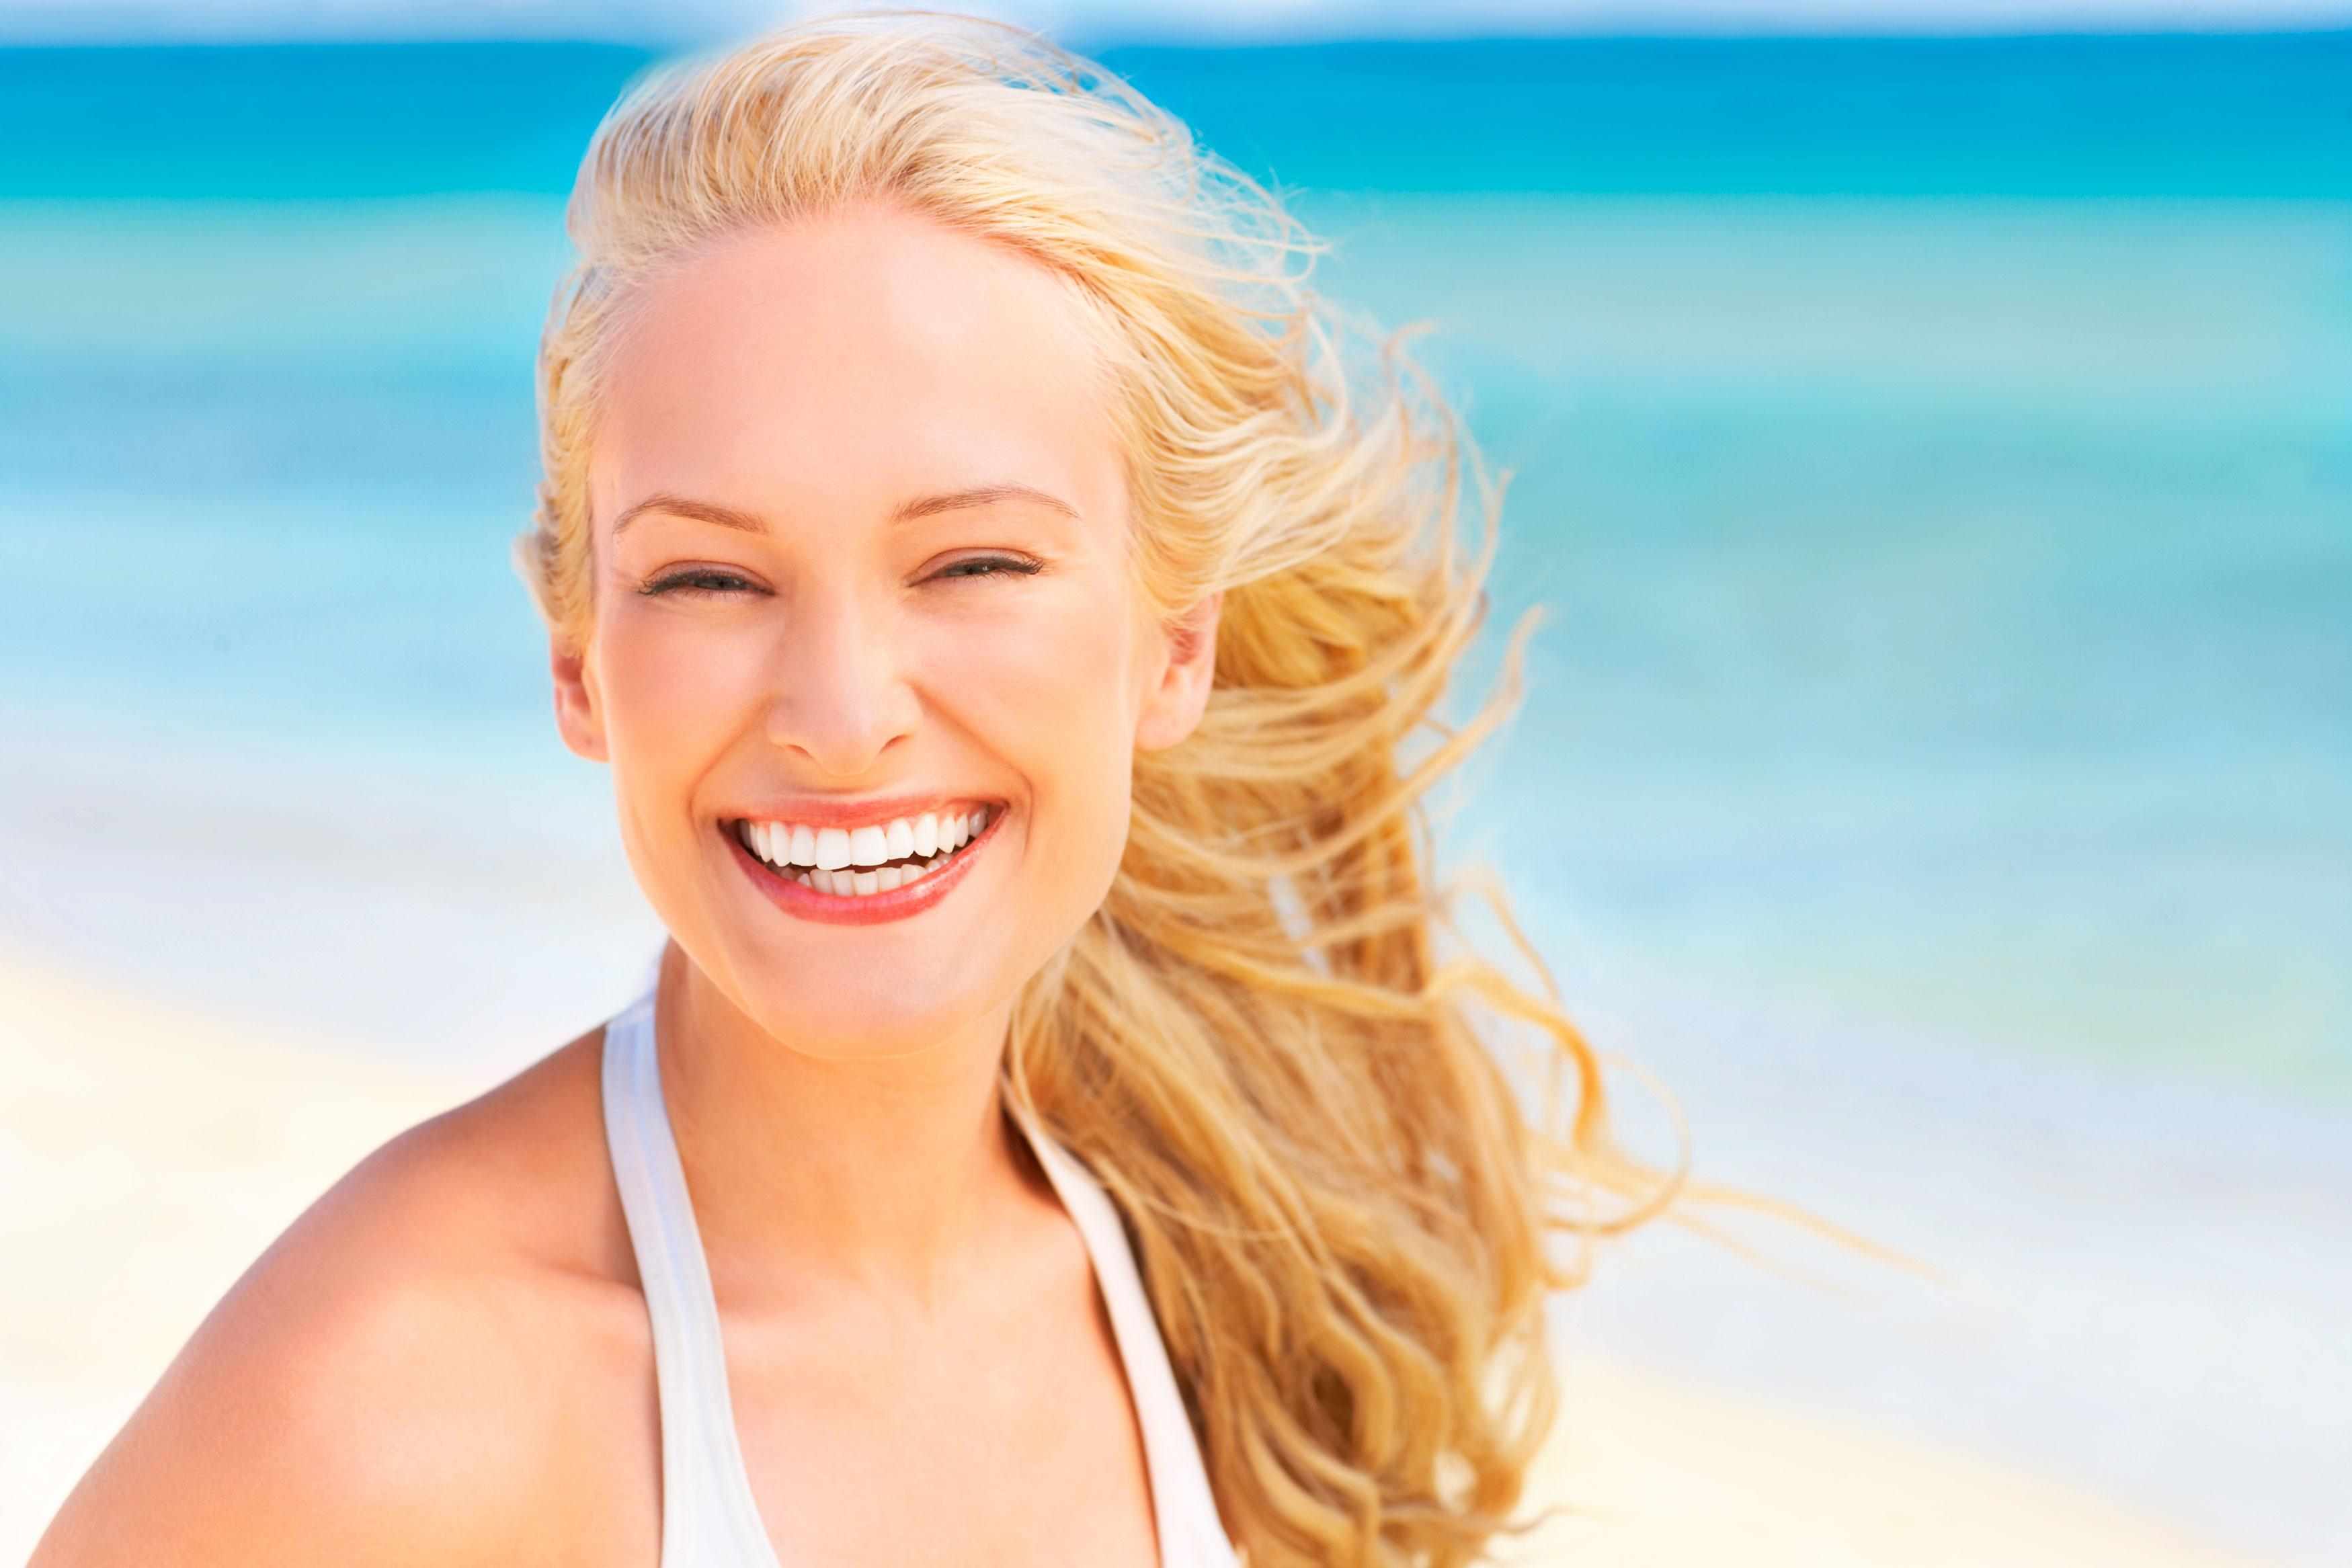 Mulher sorrindo com o lindo cabelo loiro no verão